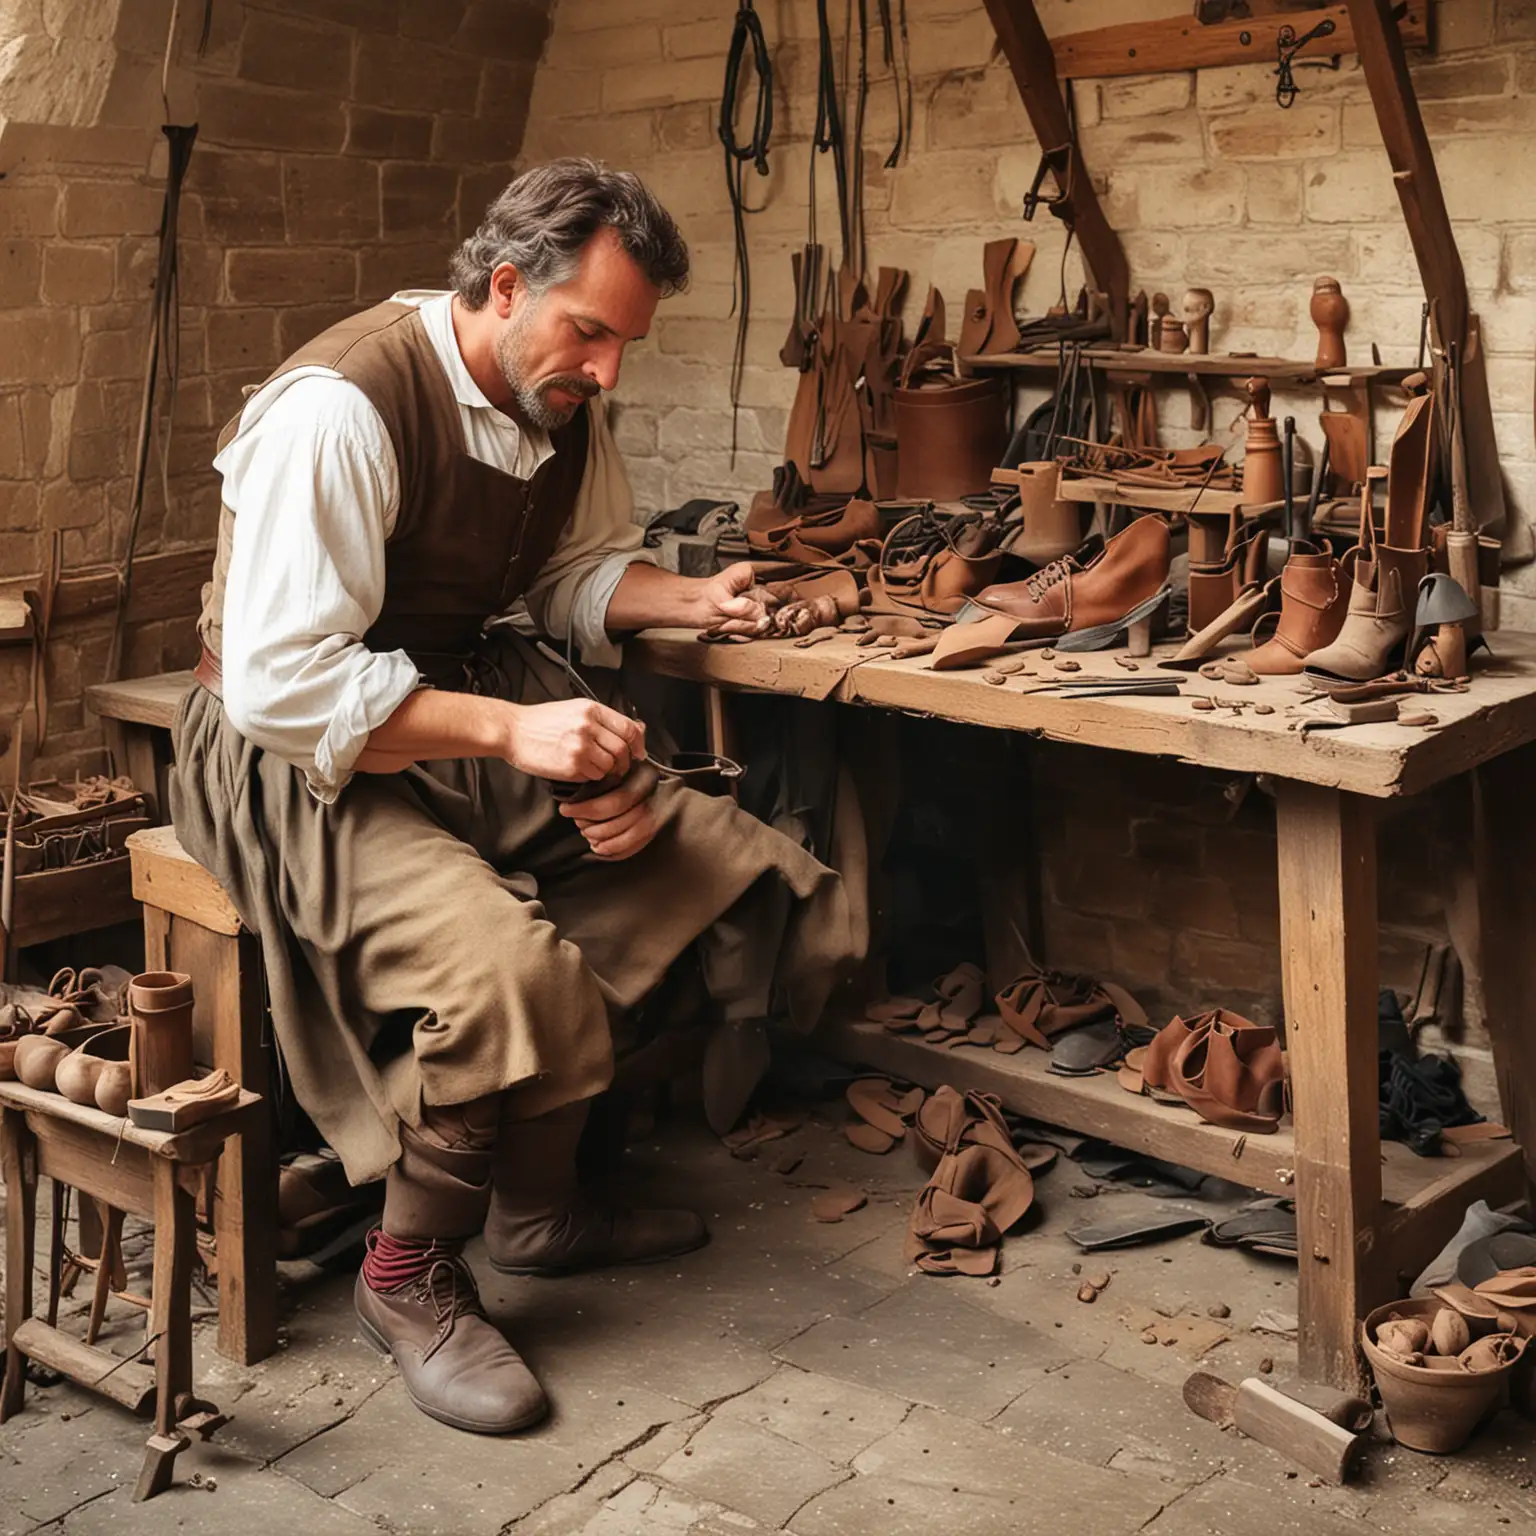 A medieval shoe maker at work